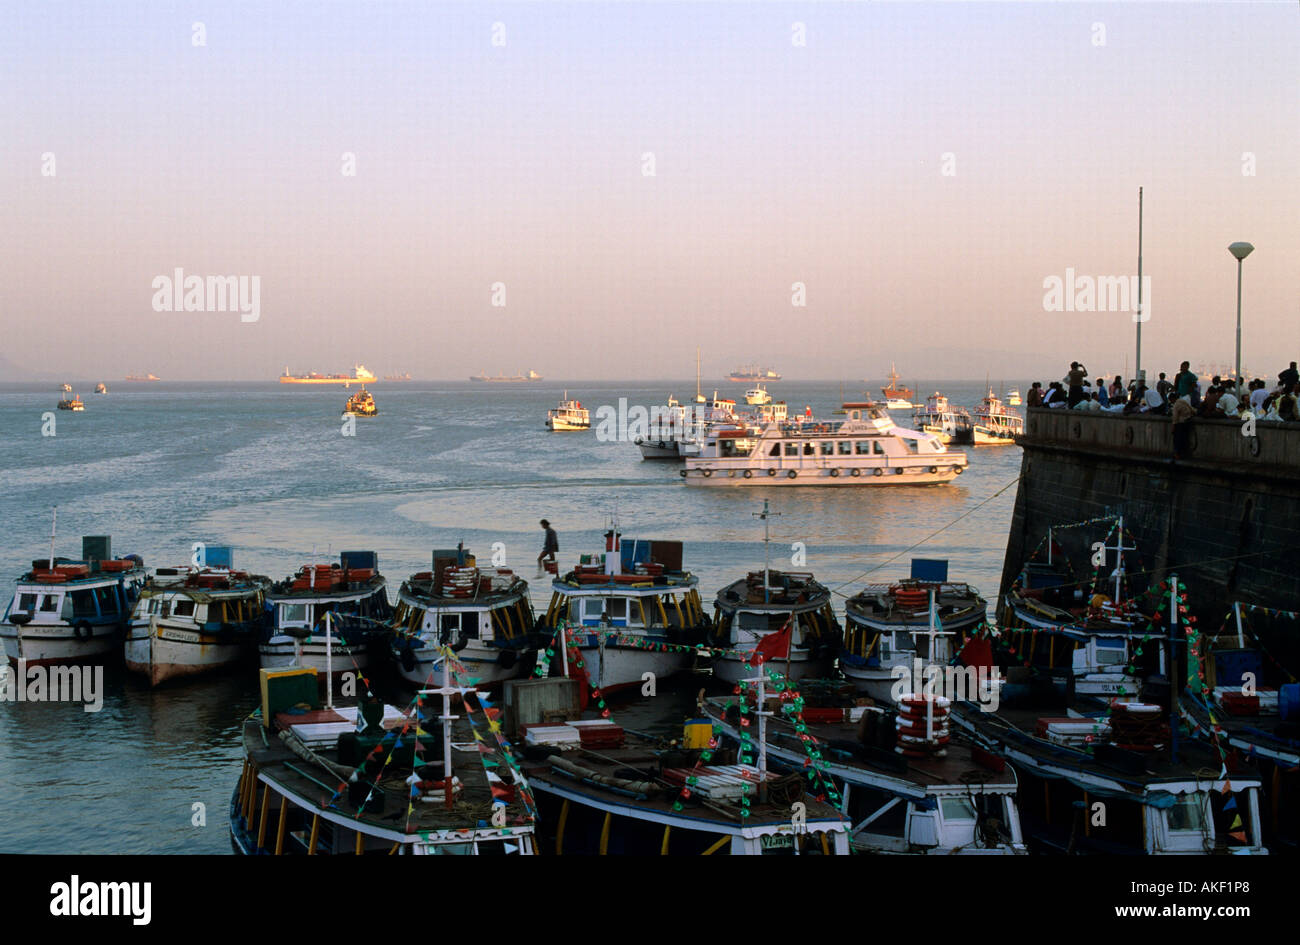 Indien, Mumbai, am Gateway of India, Boote, die Touristen durch den Hafen zur Insel Elephanta und zurück bringen. Stock Photo